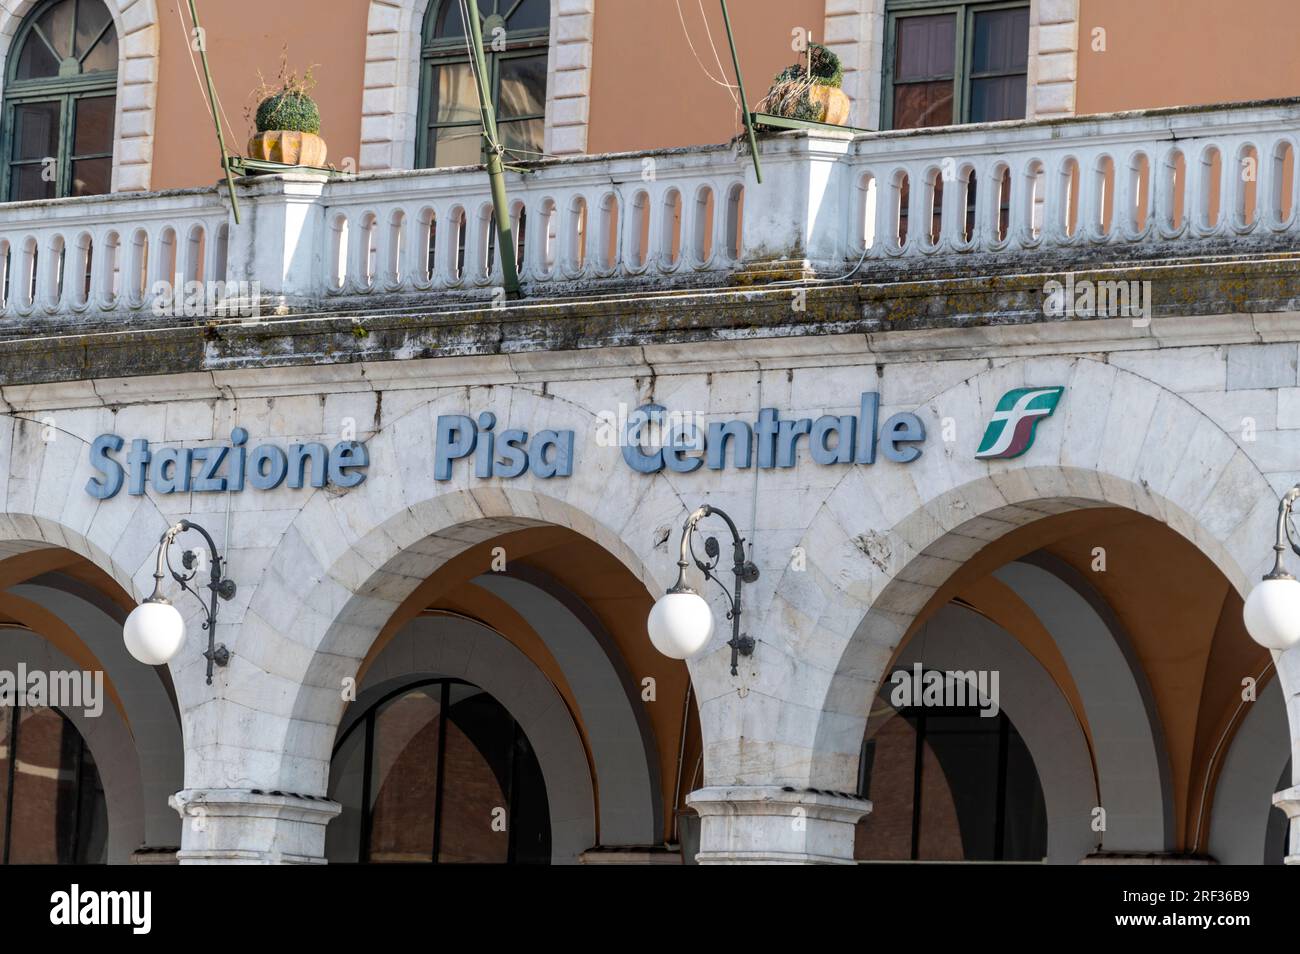 La stazione di Pisa Central è una stazione ferroviaria italiana situata a Pisa, nella regione Toscana. Foto Stock